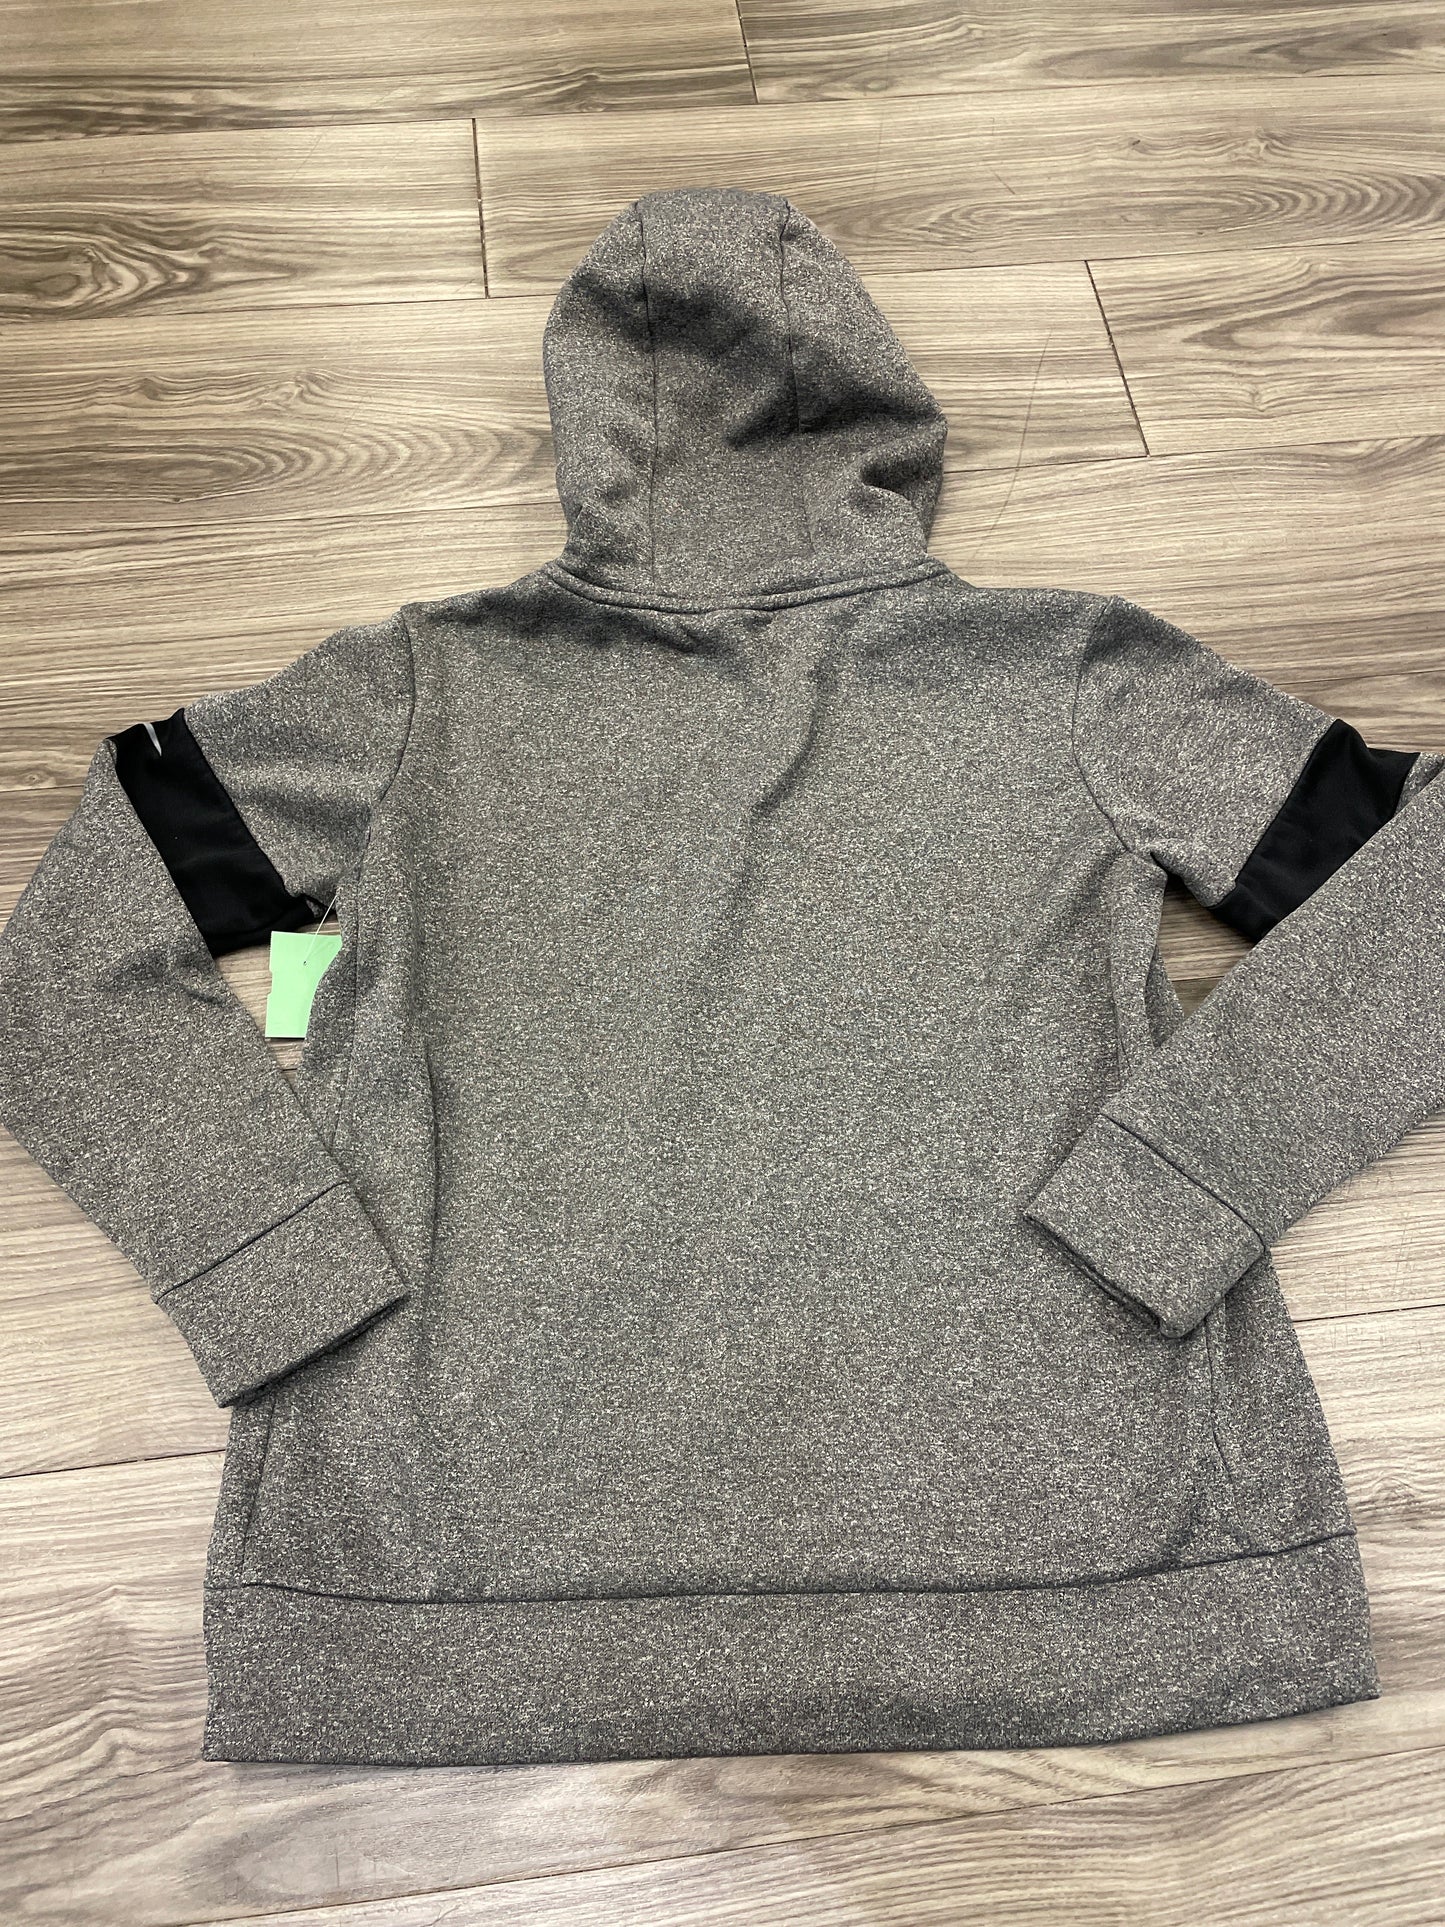 Black & Grey Athletic Sweatshirt Hoodie Nike, Size S